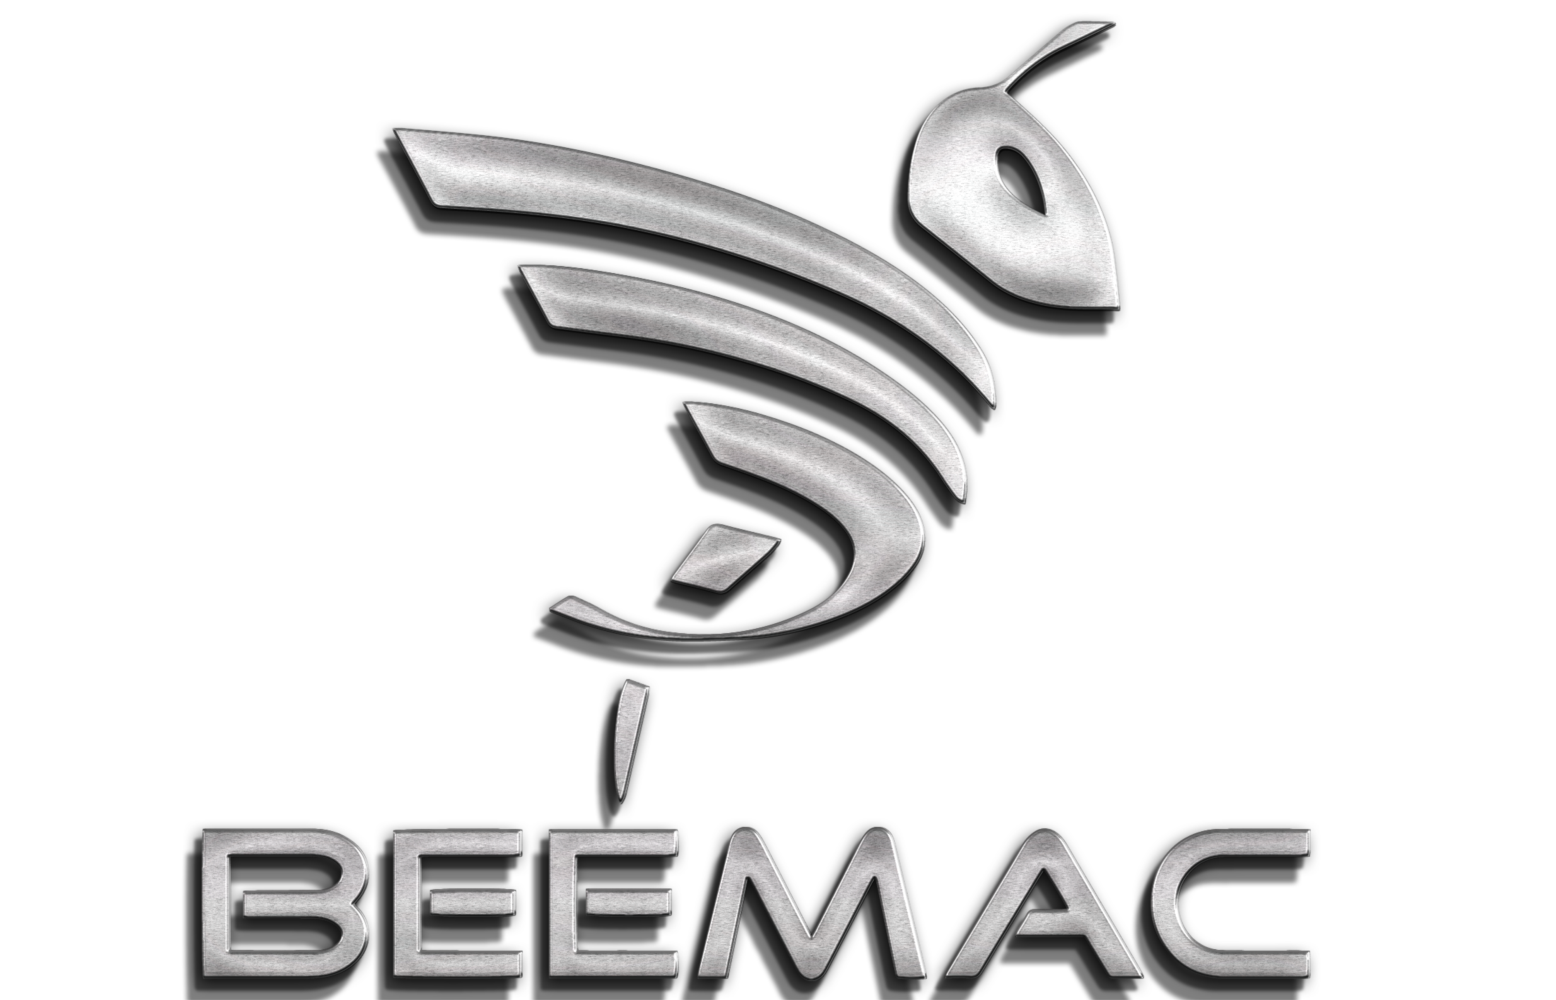 Beemac, Inc. logo